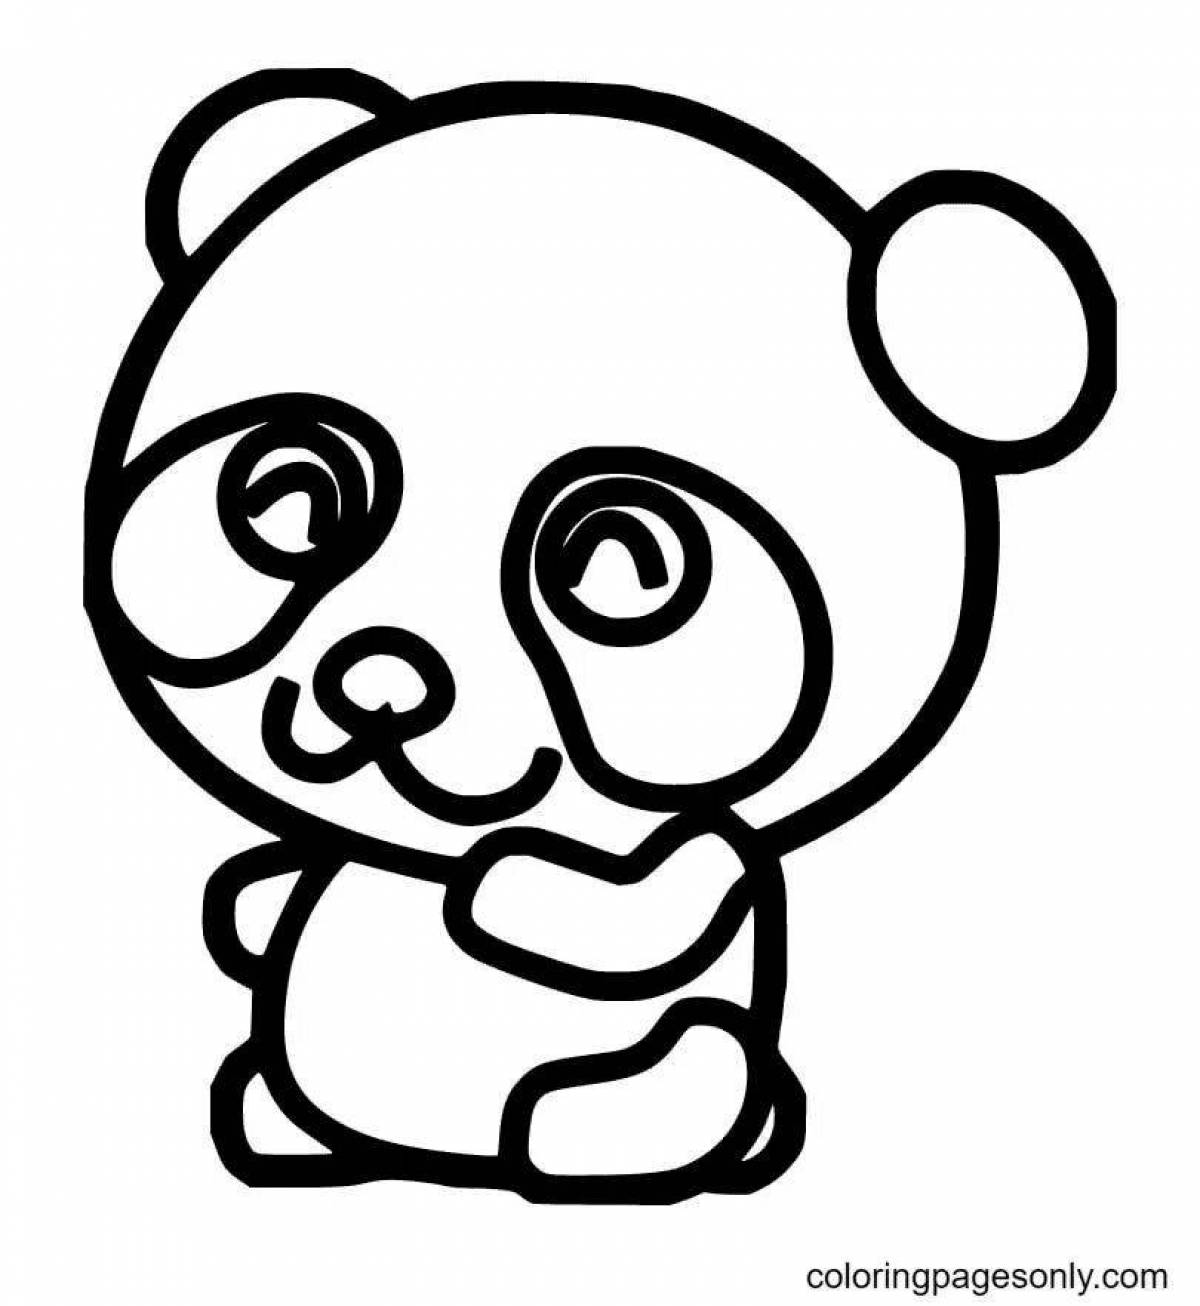 Adorable cute bear coloring book